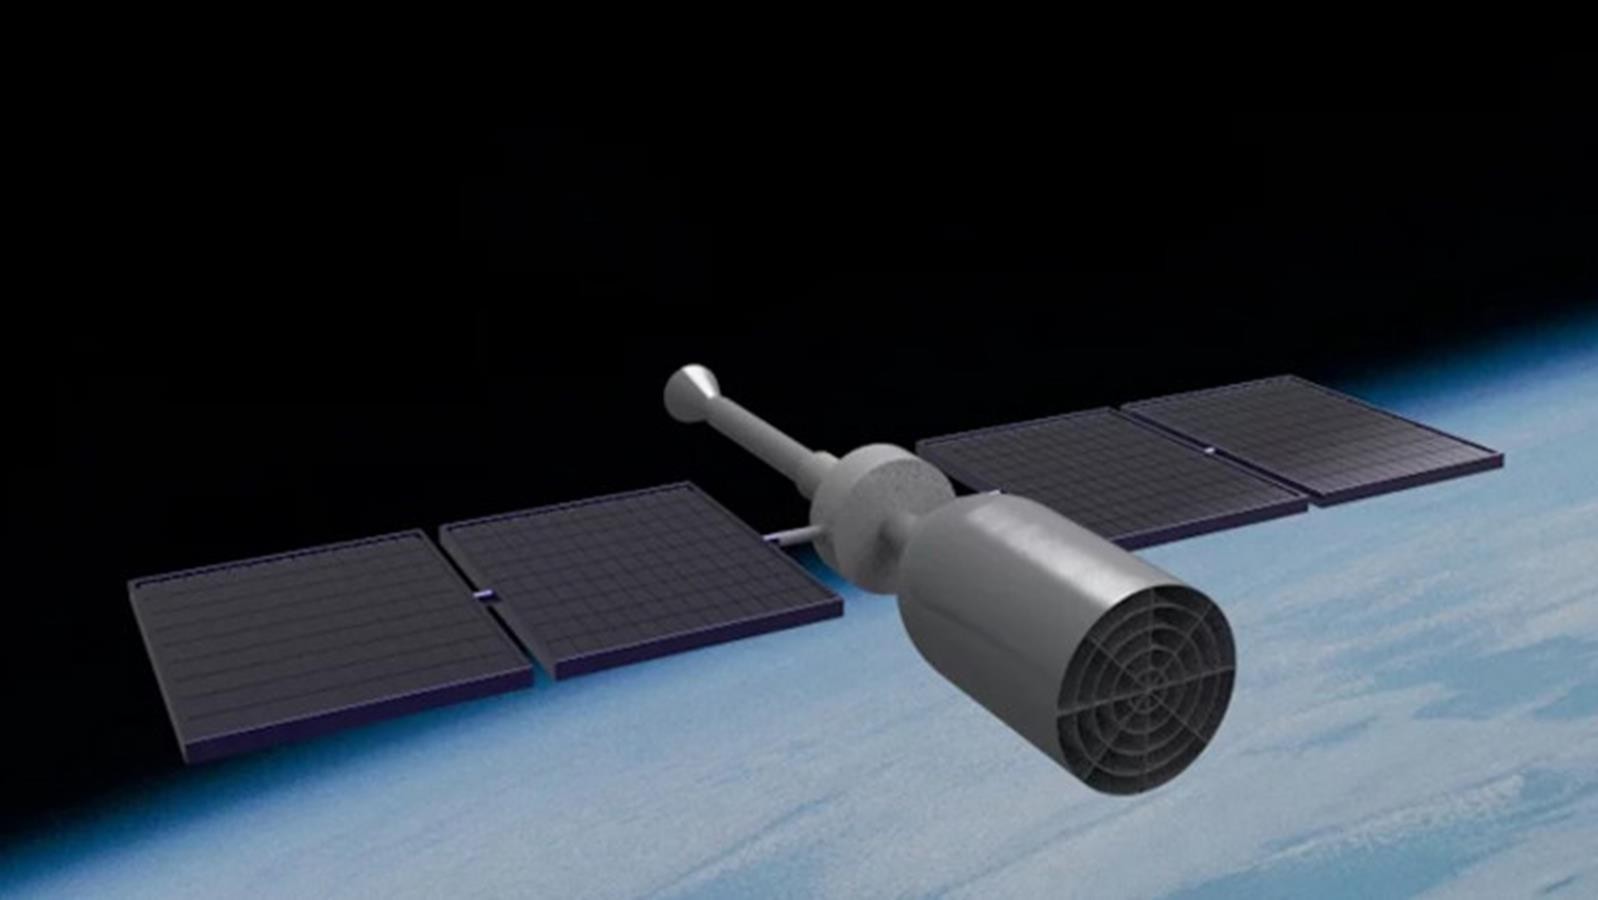 Bezpaliwowy system napędowy dla satelitów, bardzo niską orbitę okołoziemską